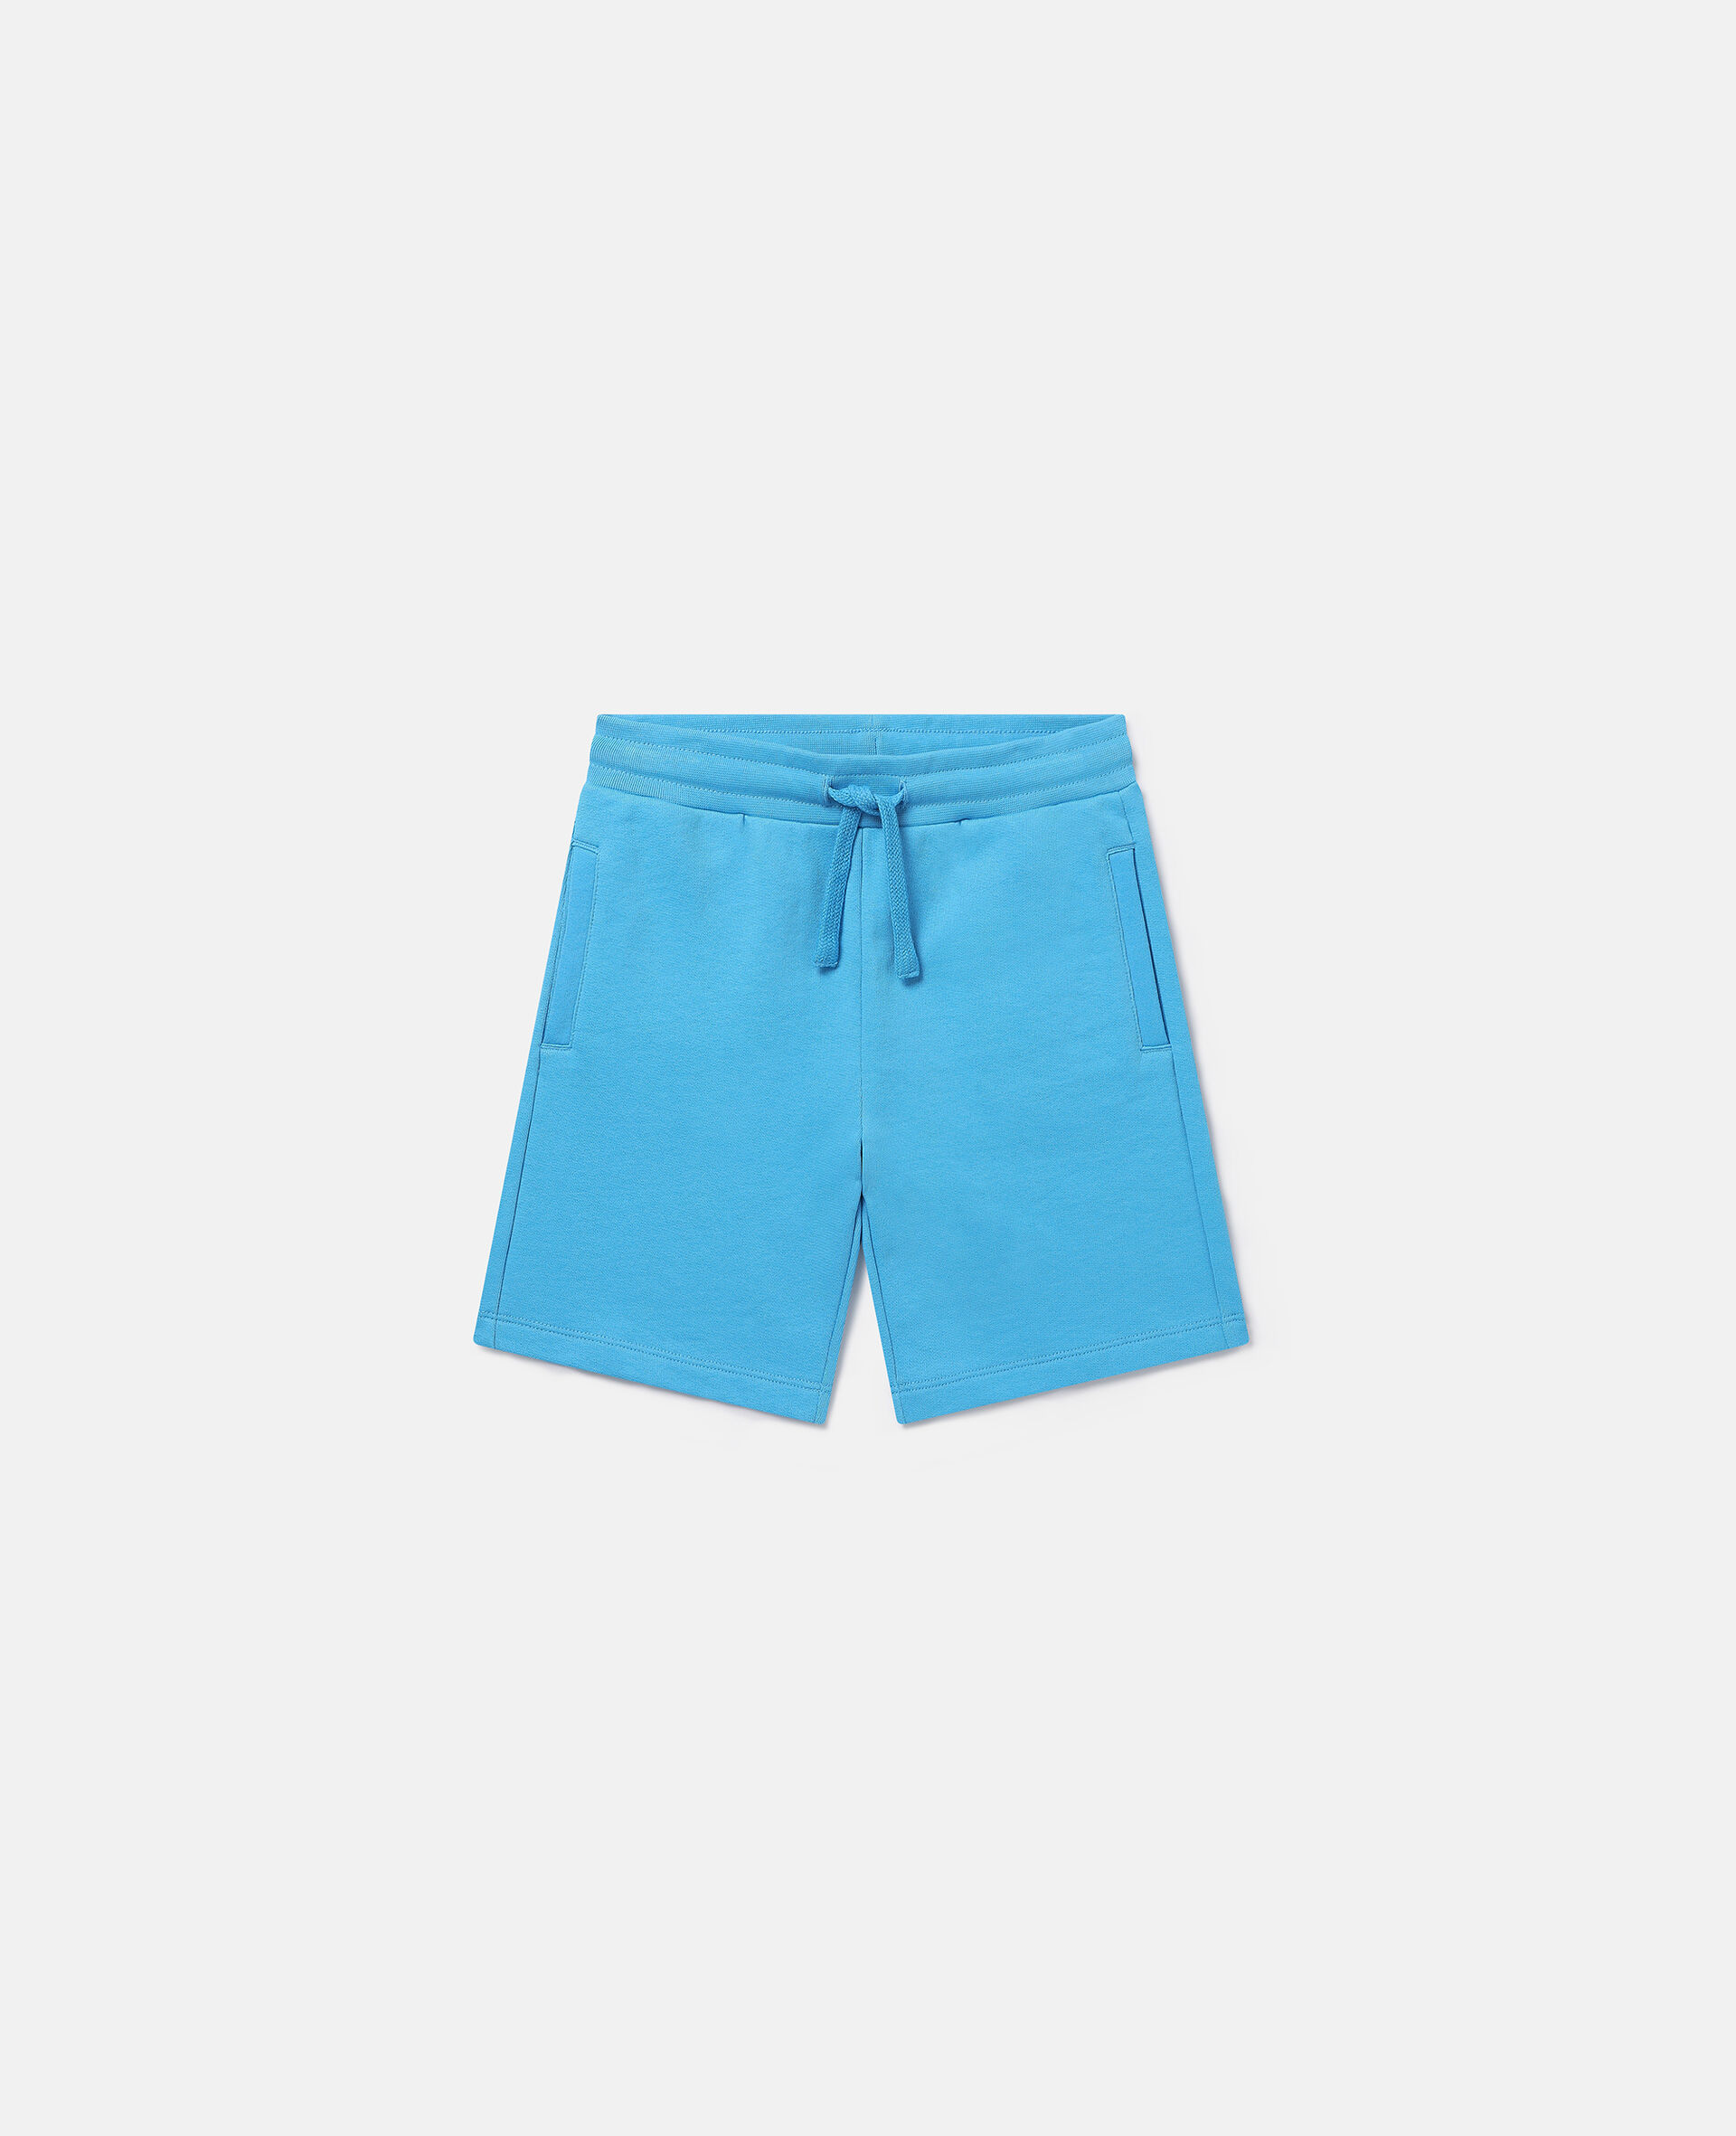 Drawstring Shorts-Blau-medium